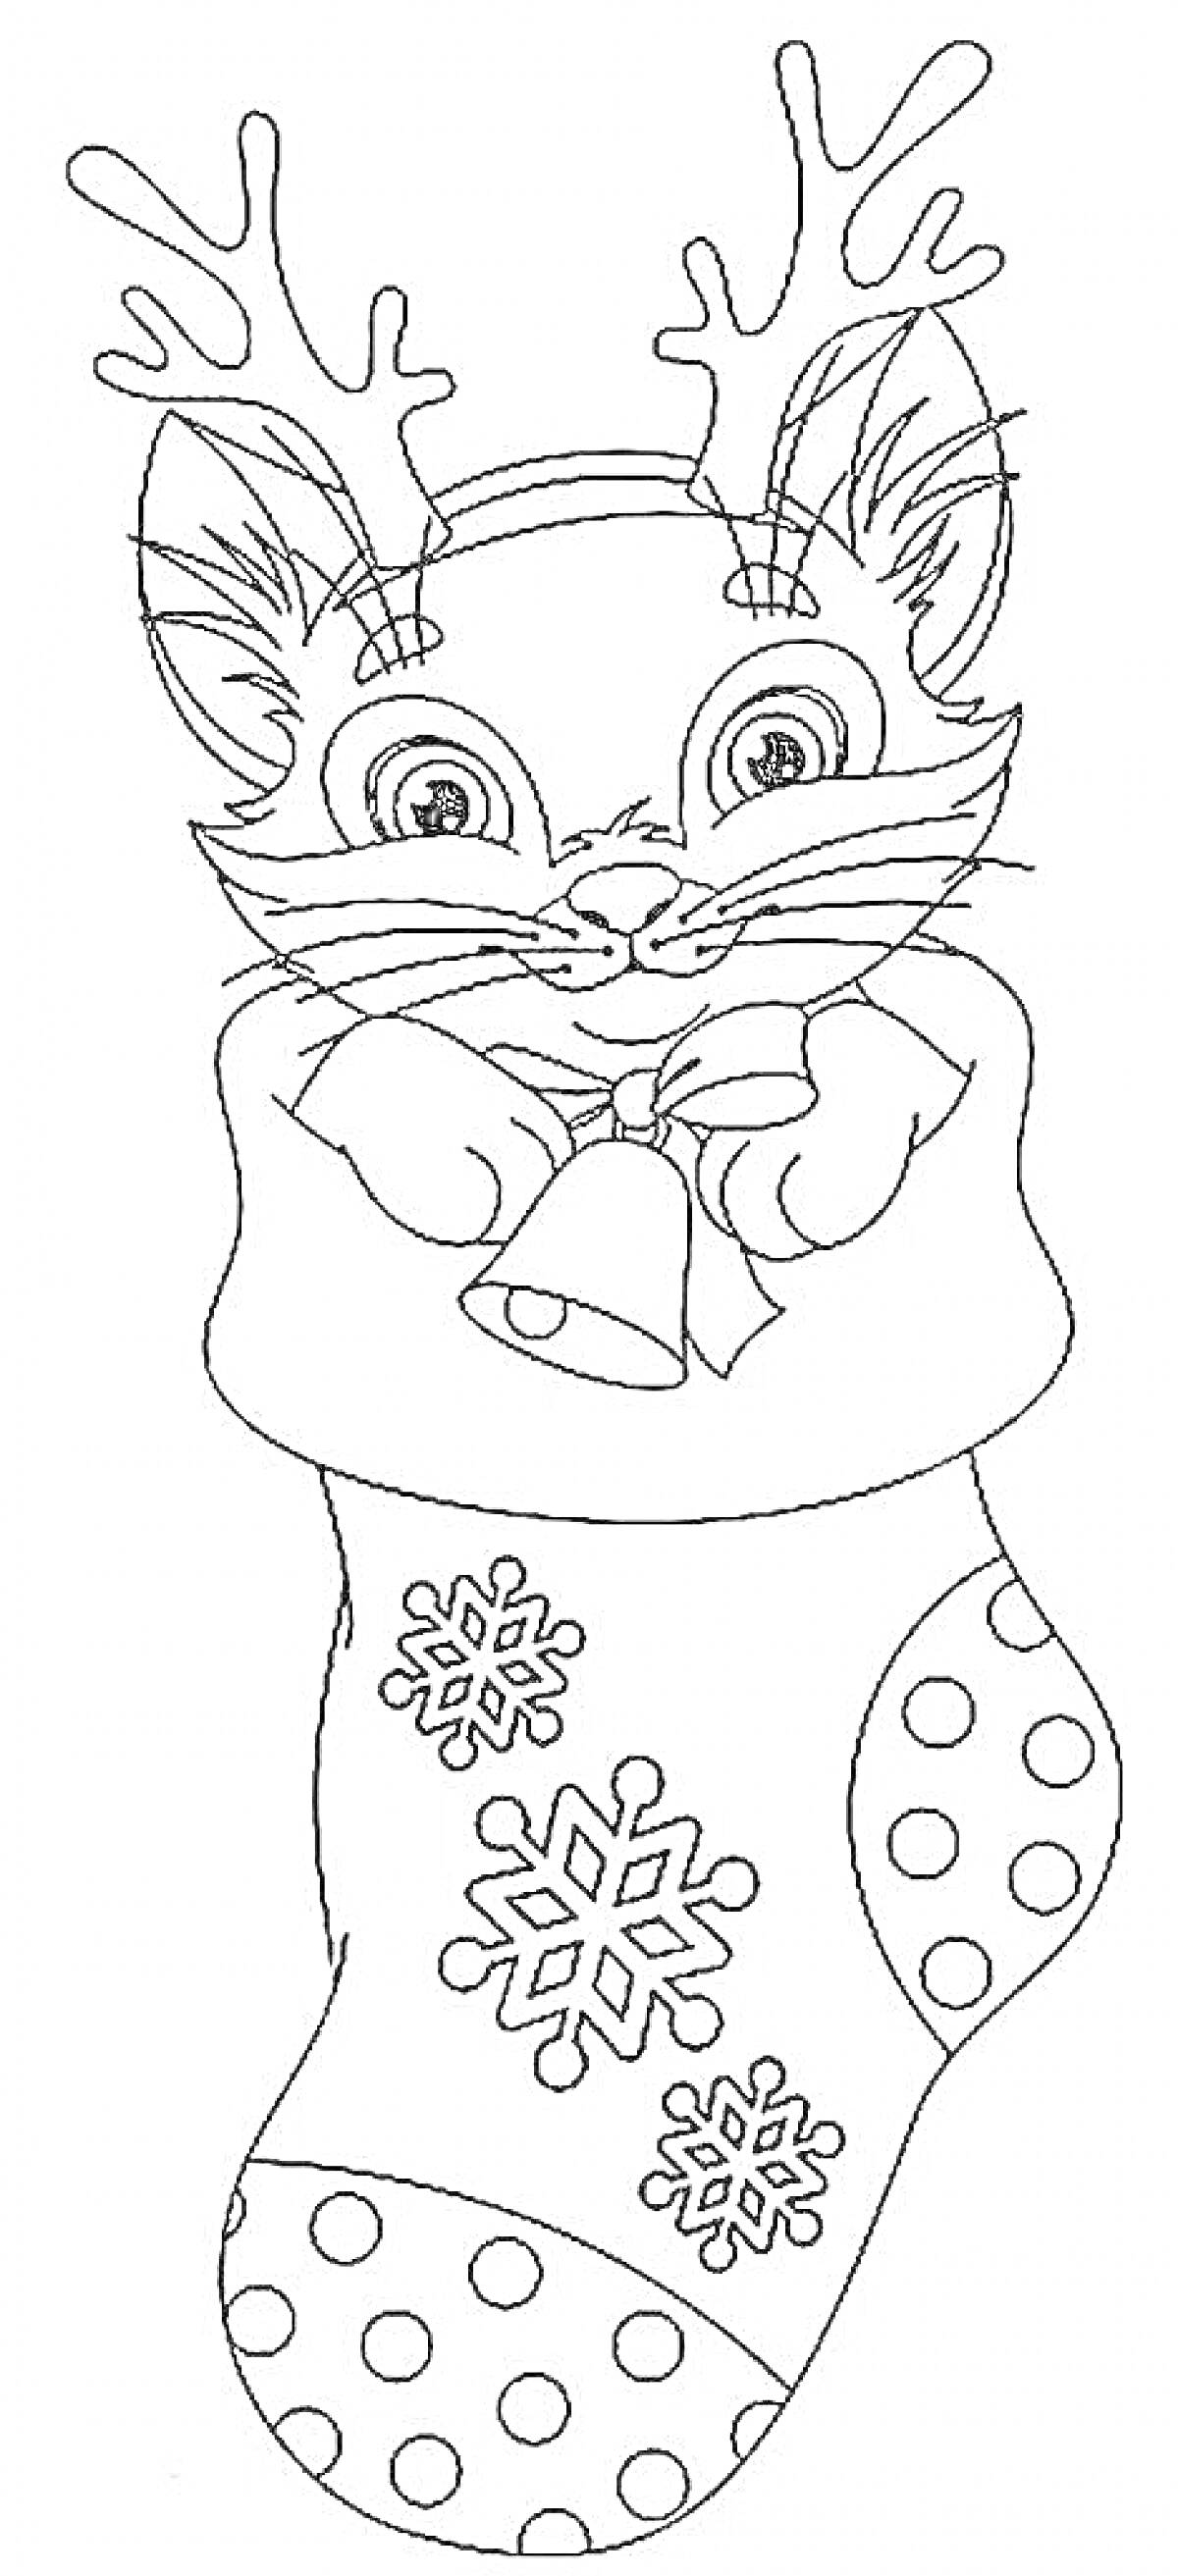 Раскраска Кошка с рожками оленя в новогоднем носке с колокольчиком и снежинками